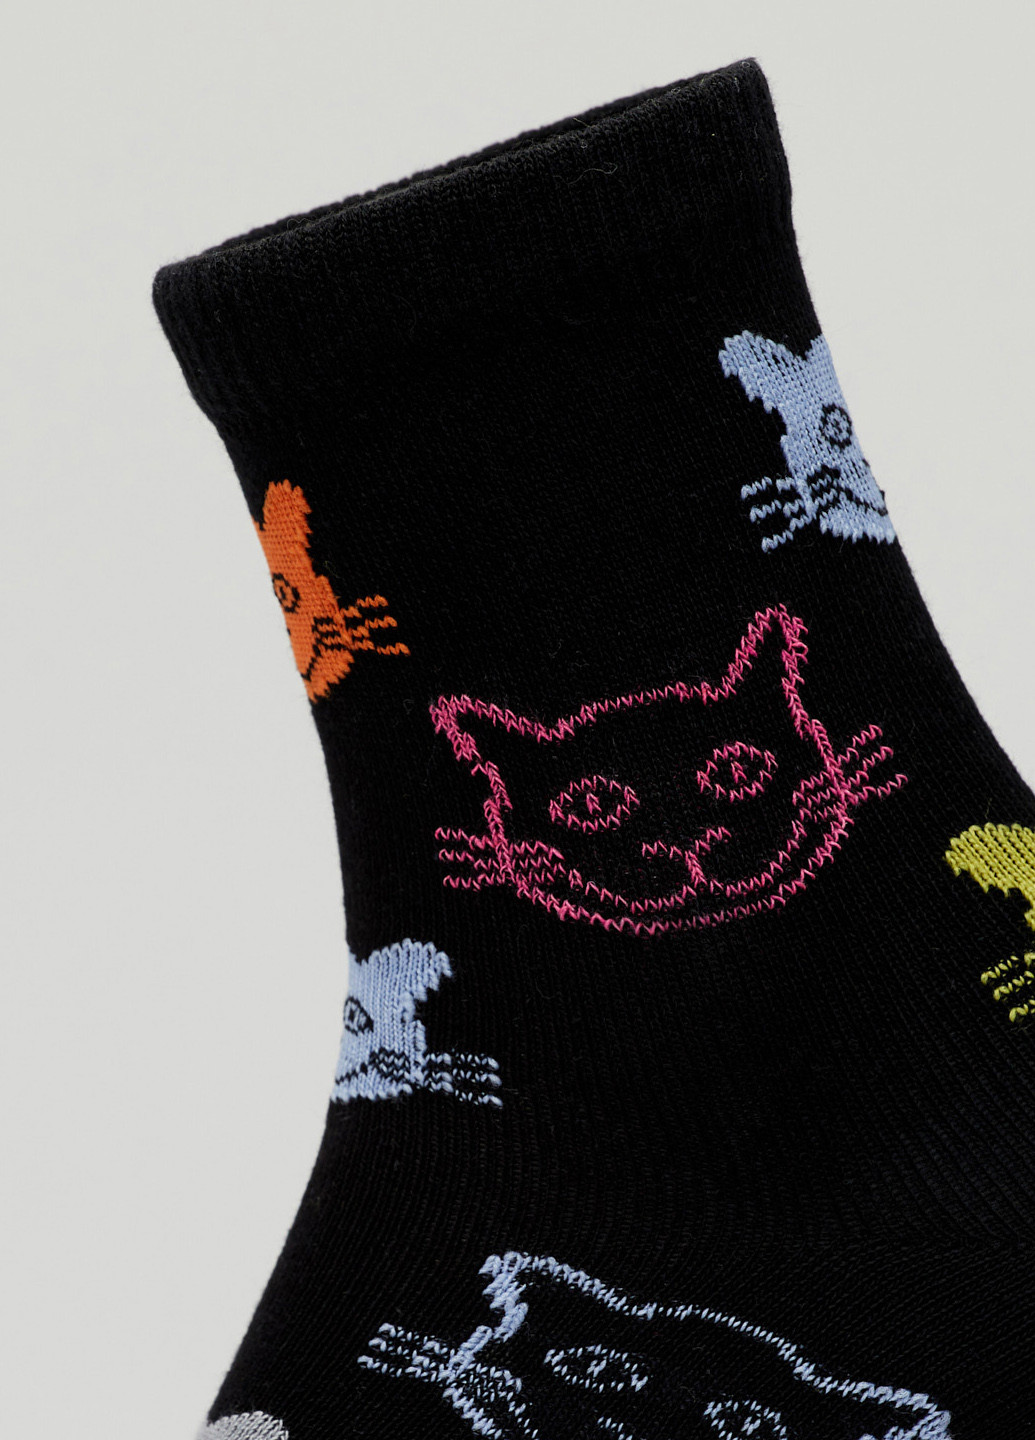 Шкарпетки Коти кольорові чорні Rock'n'socks чорні повсякденні